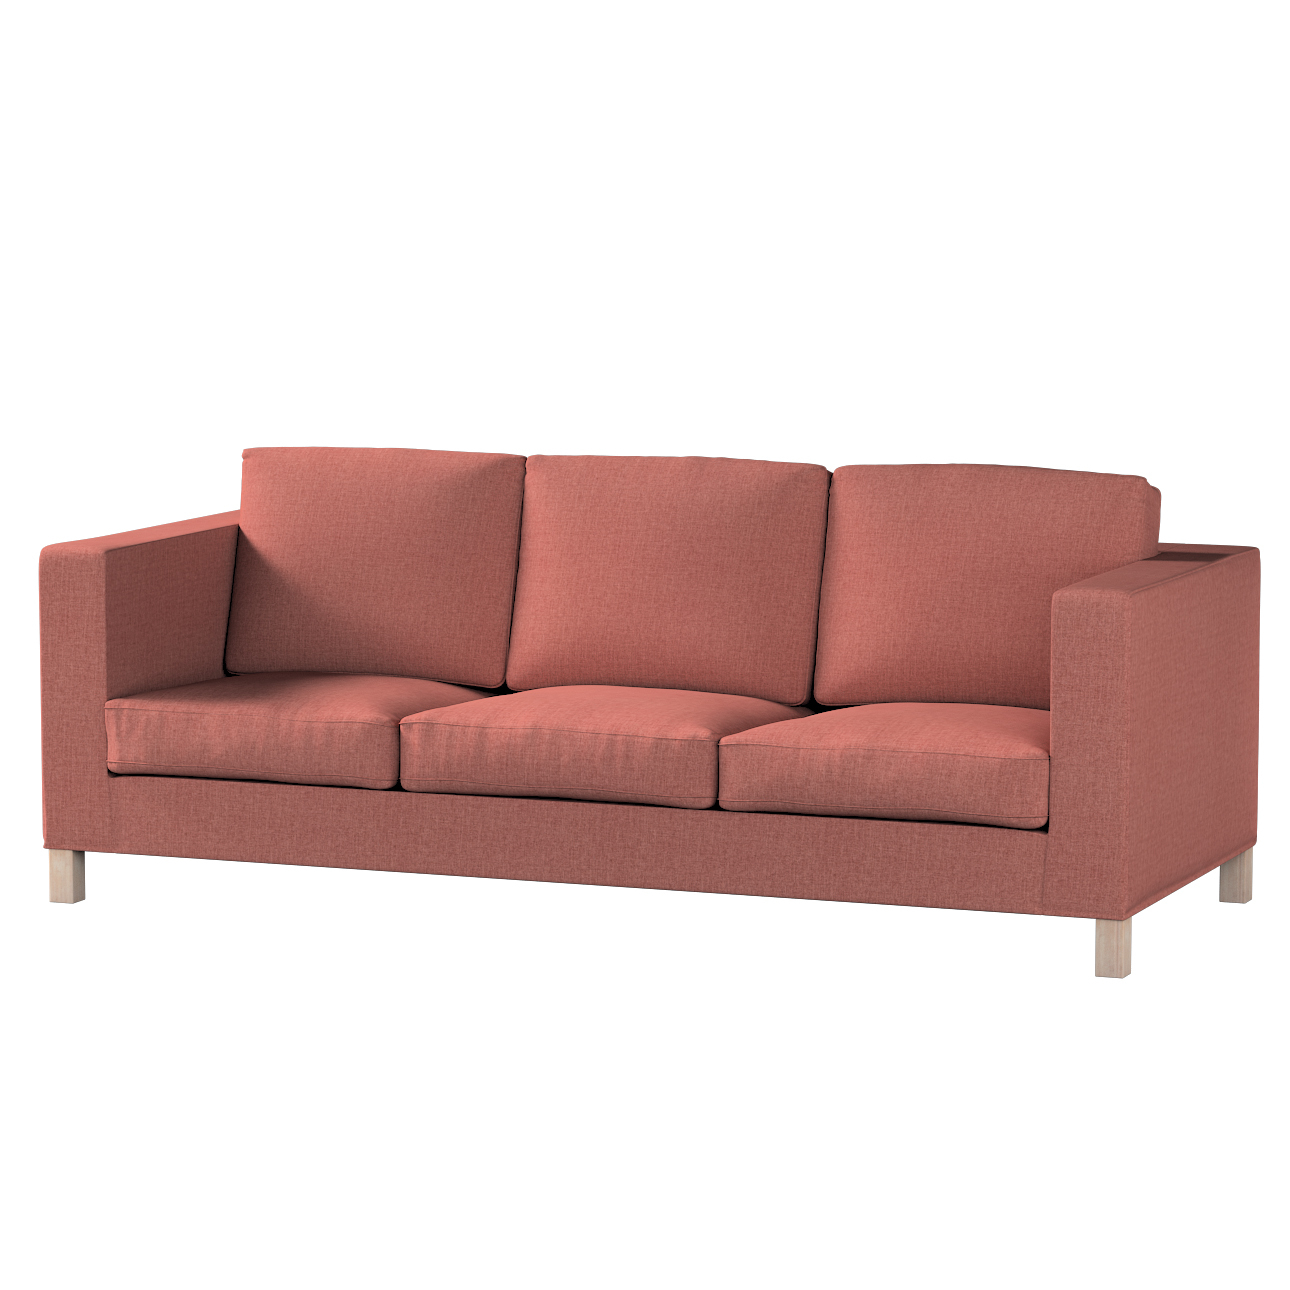 Bezug für Karlanda 3-Sitzer Sofa nicht ausklappbar, kurz, cognac braun, Bez günstig online kaufen